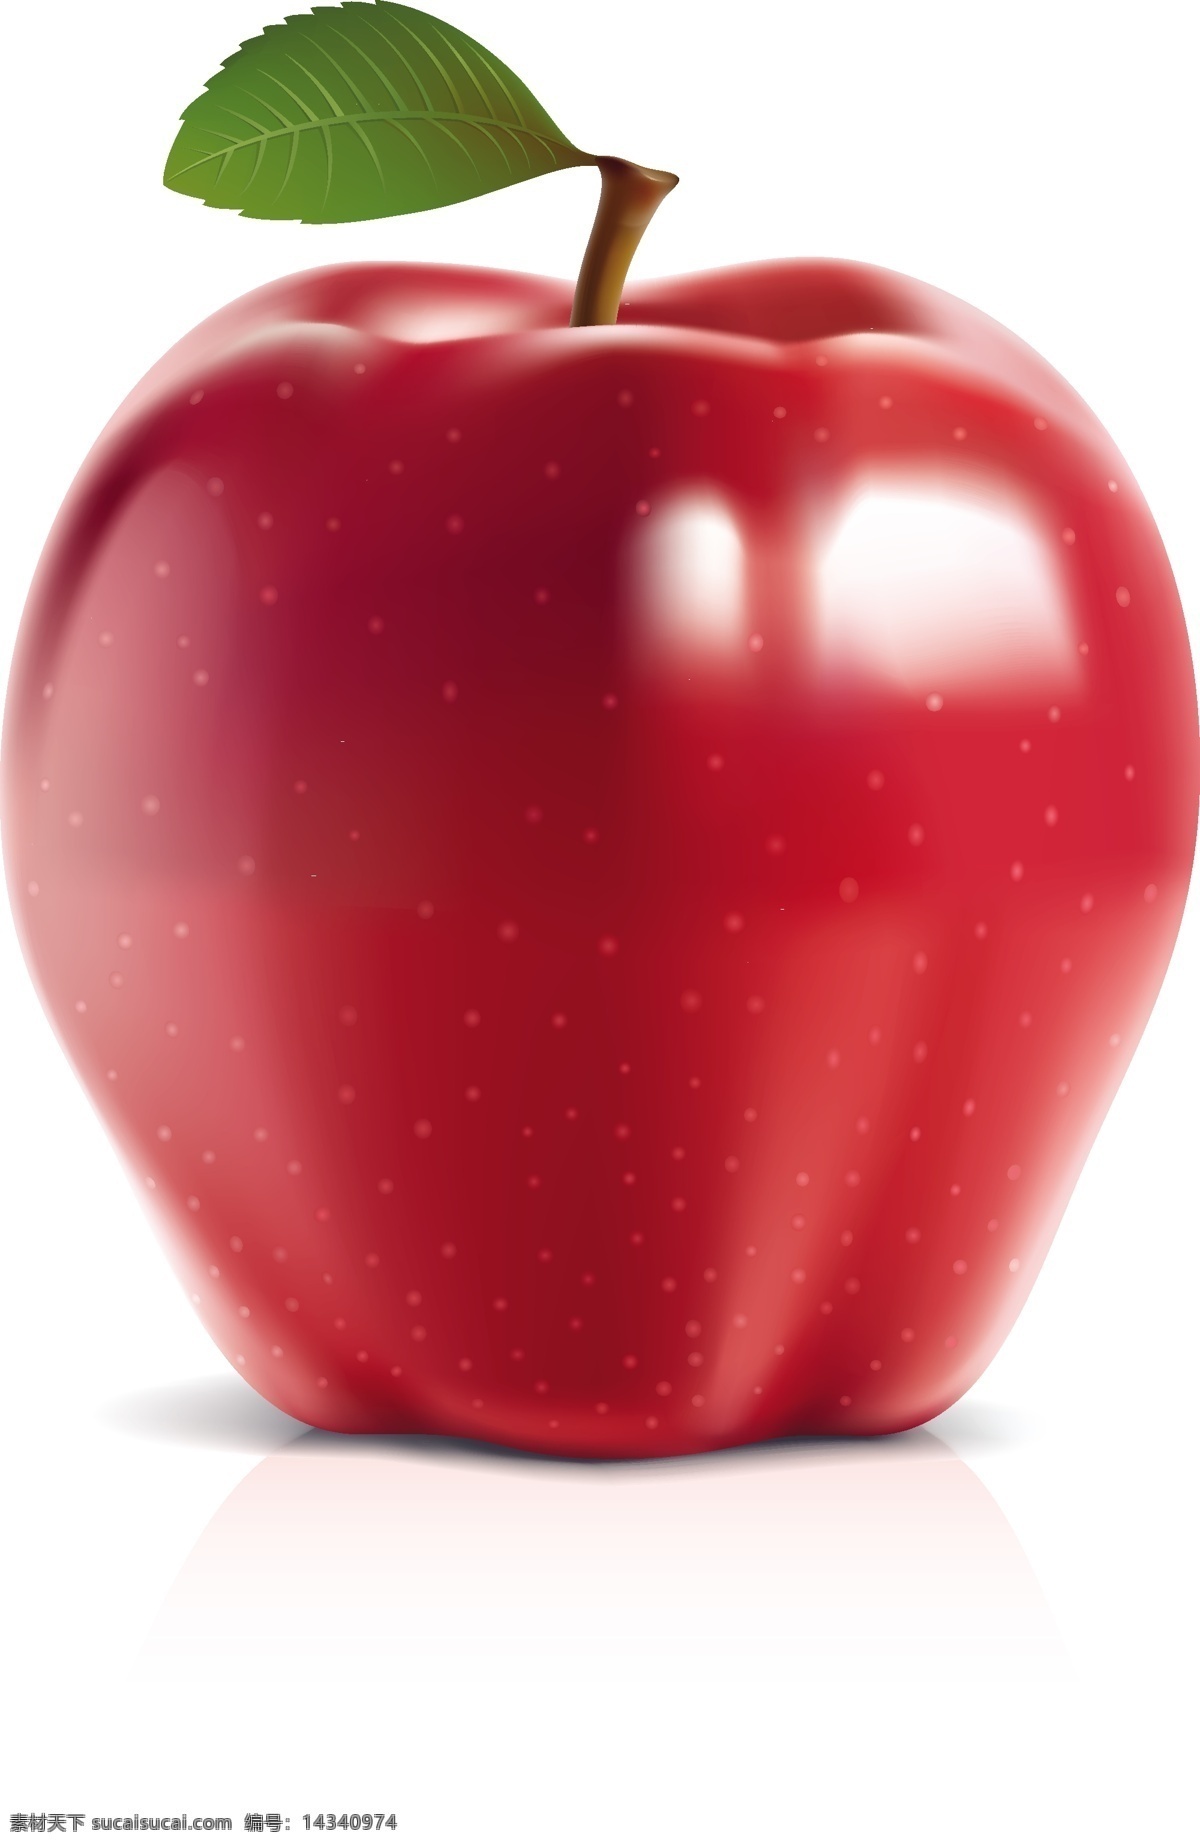 新鲜 红苹果 苹果 矢量水果 矢量素材 叶子 矢量图 日常生活